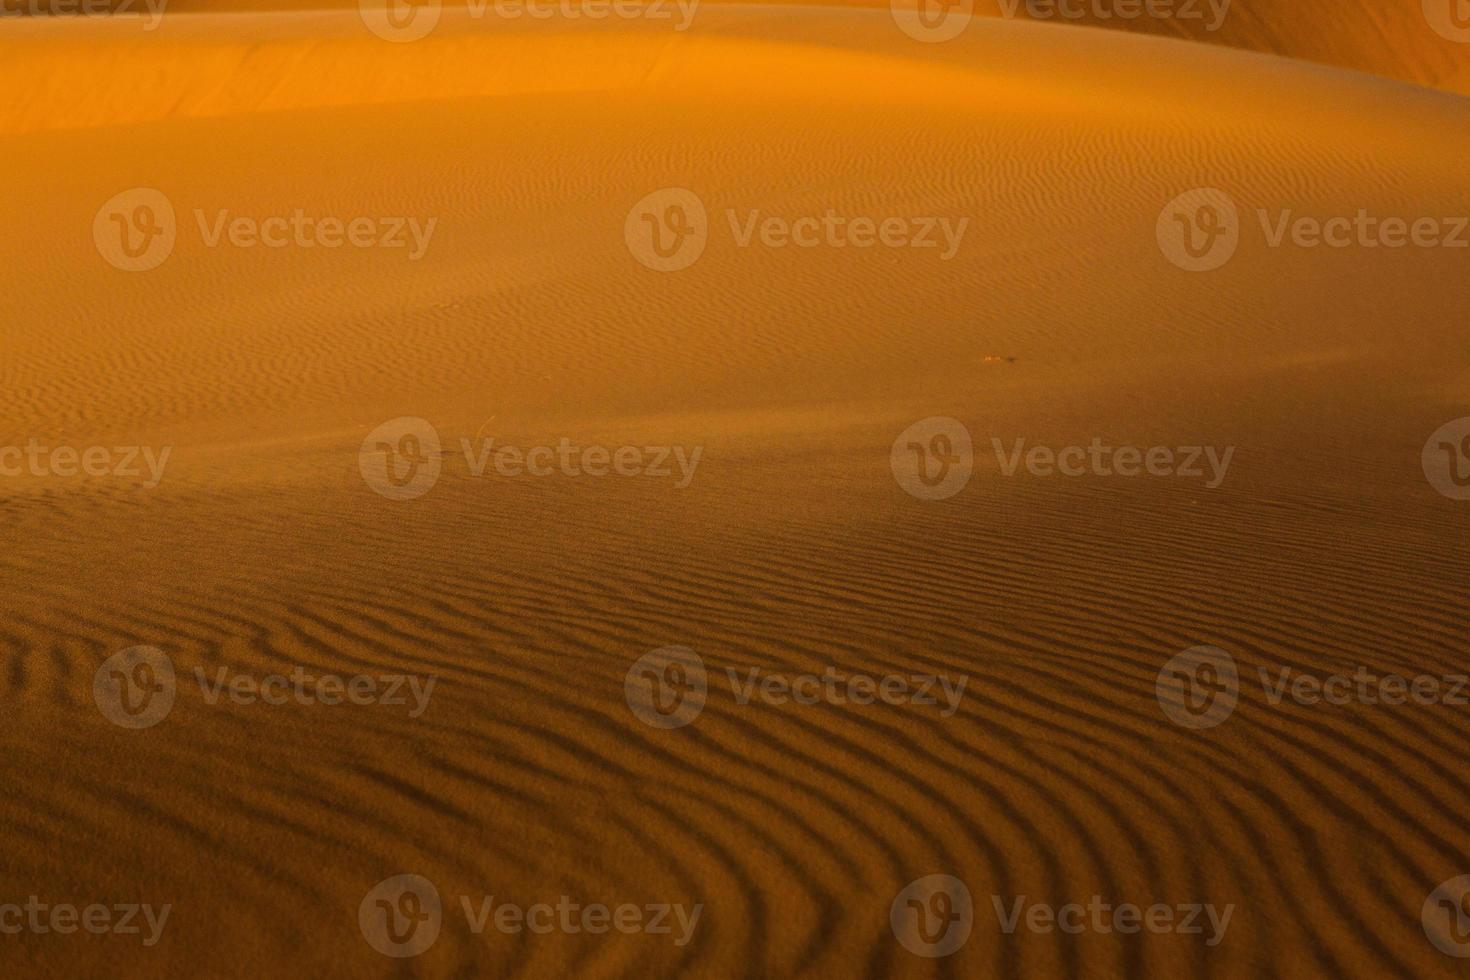 belles dunes de sable dans le désert du sahara au maroc. paysage en afrique dans le désert. photo